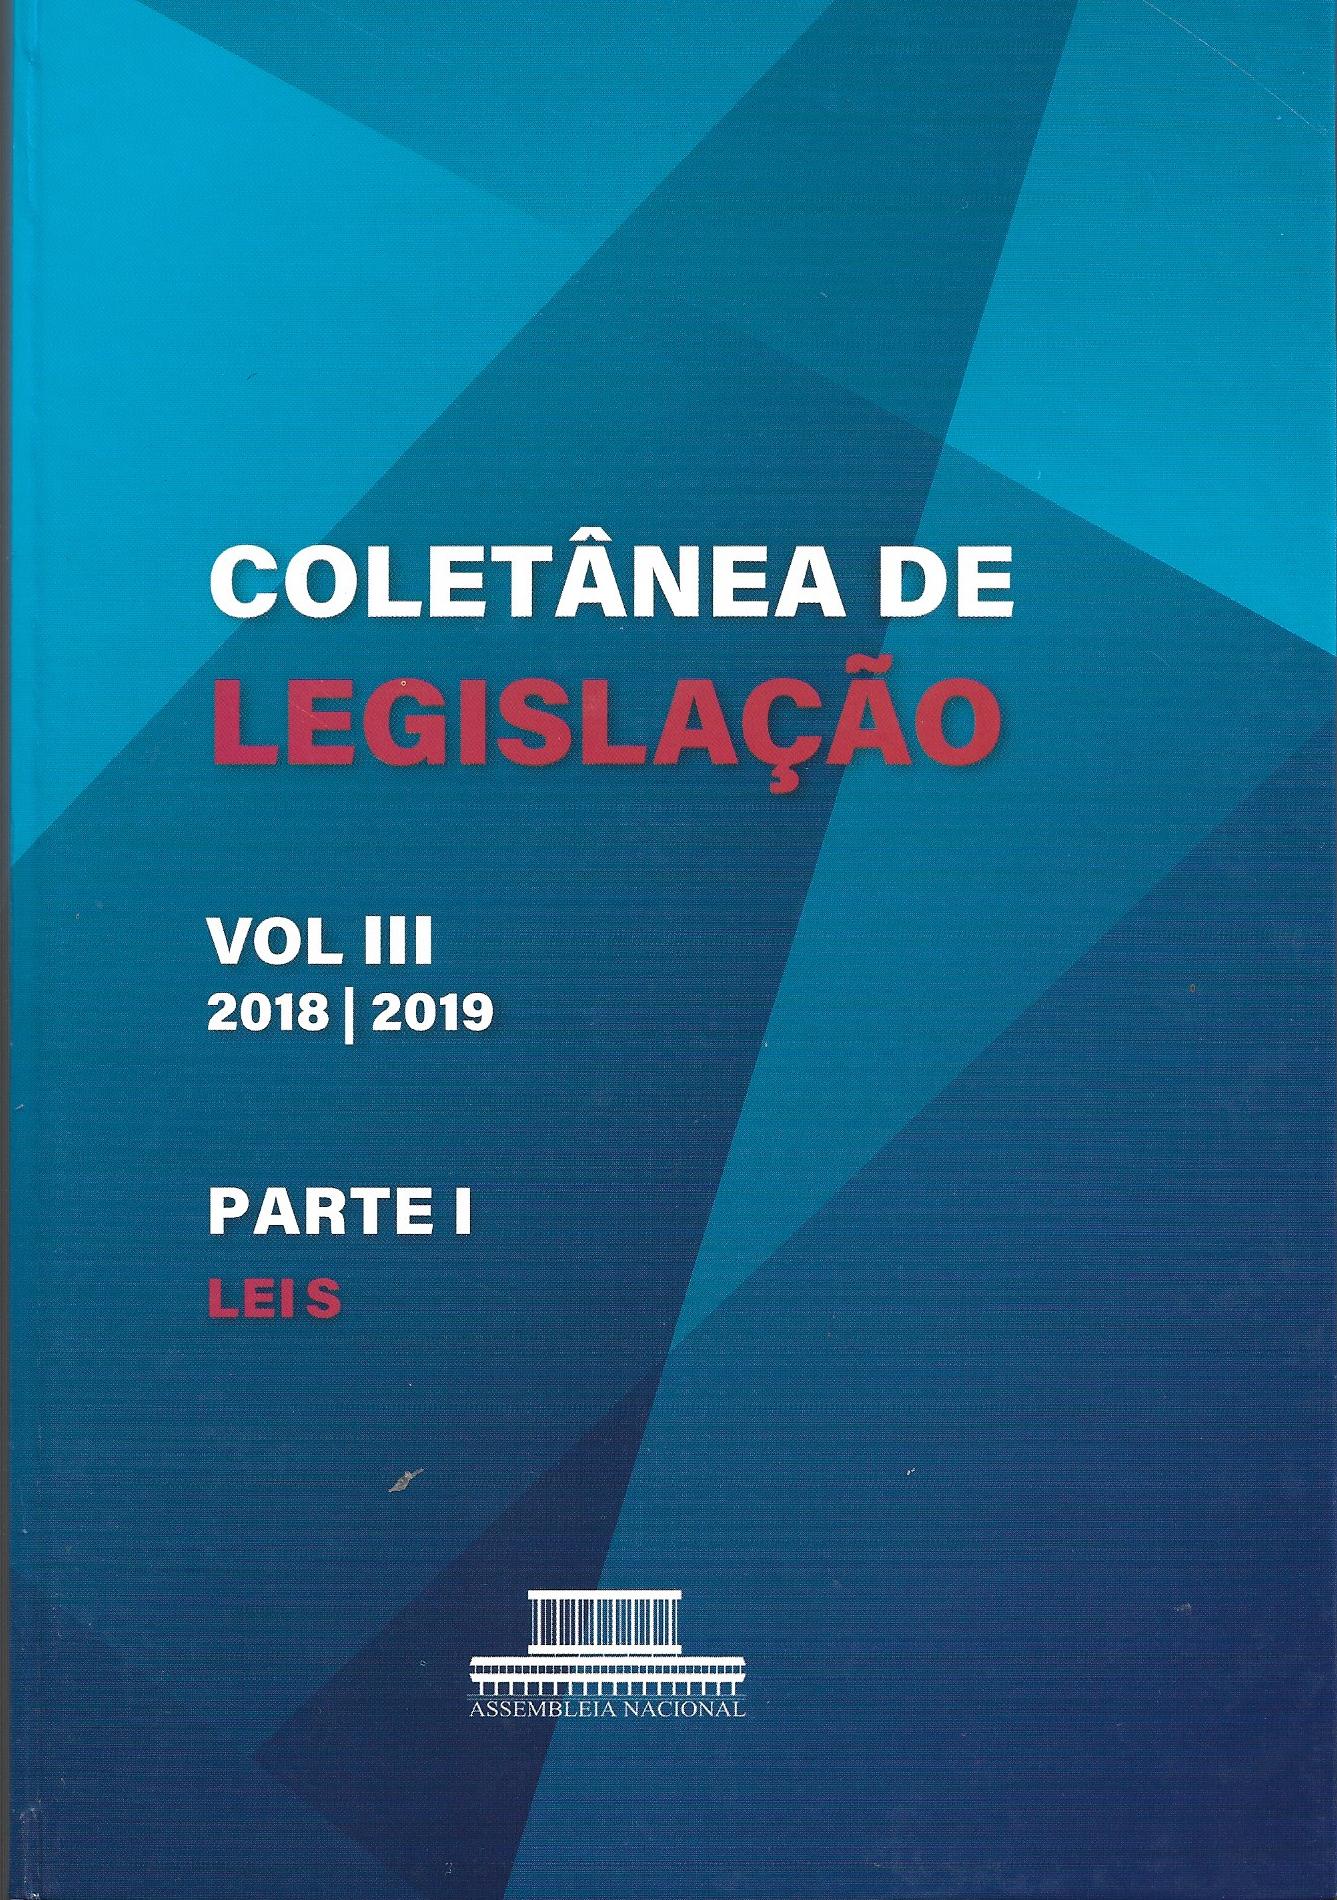 Coletânea de Legislação VOL III 2018/2019 -  Parte I - Leis 